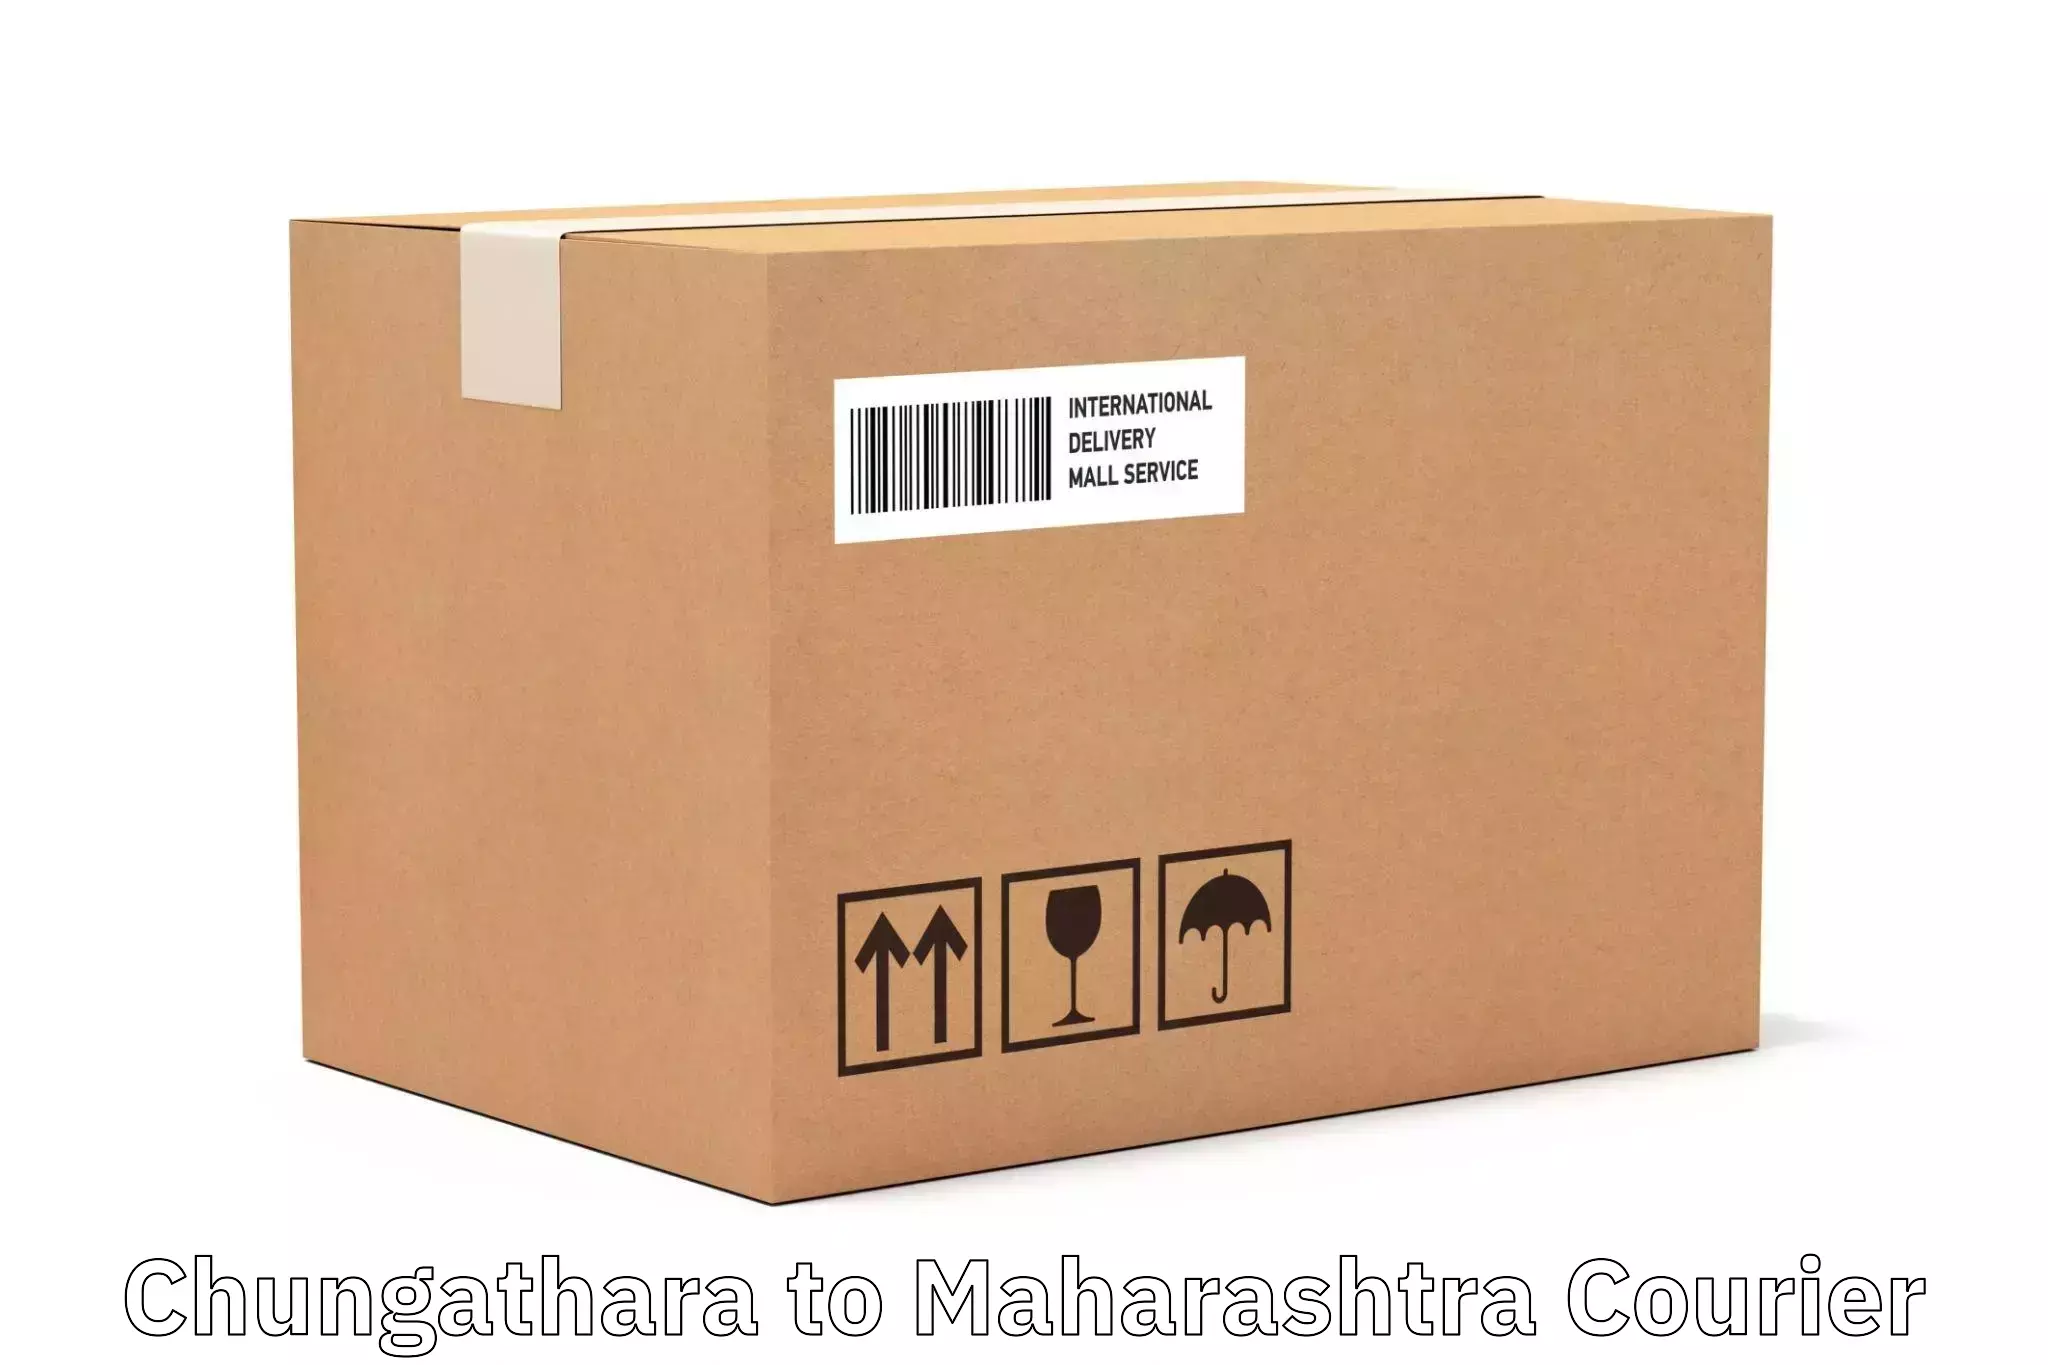 Courier service innovation Chungathara to Maharashtra